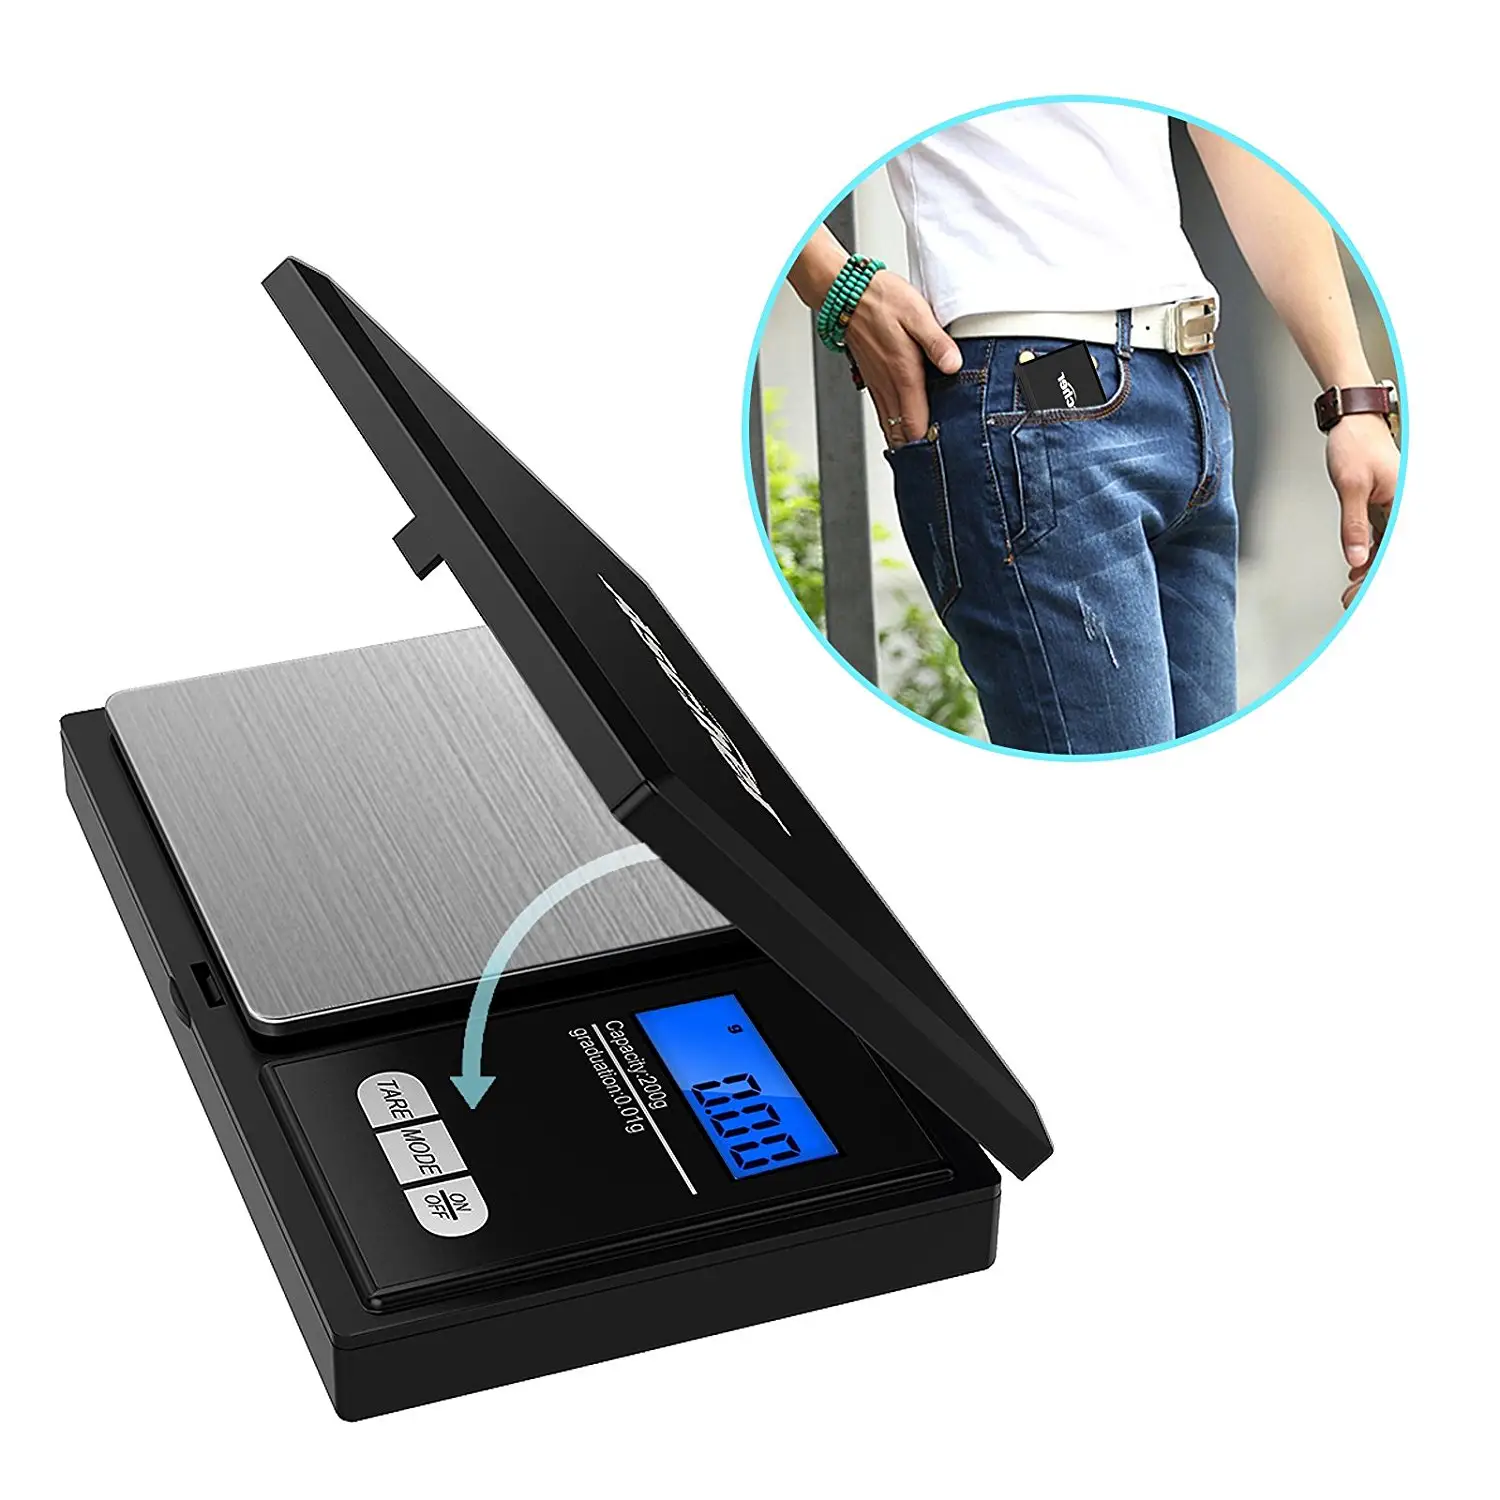 Venta caliente Digital Escala de bolsillo con AAA batería Mini Digital escala de peso balanza electrónica Gram báscula Digital de bolsillo